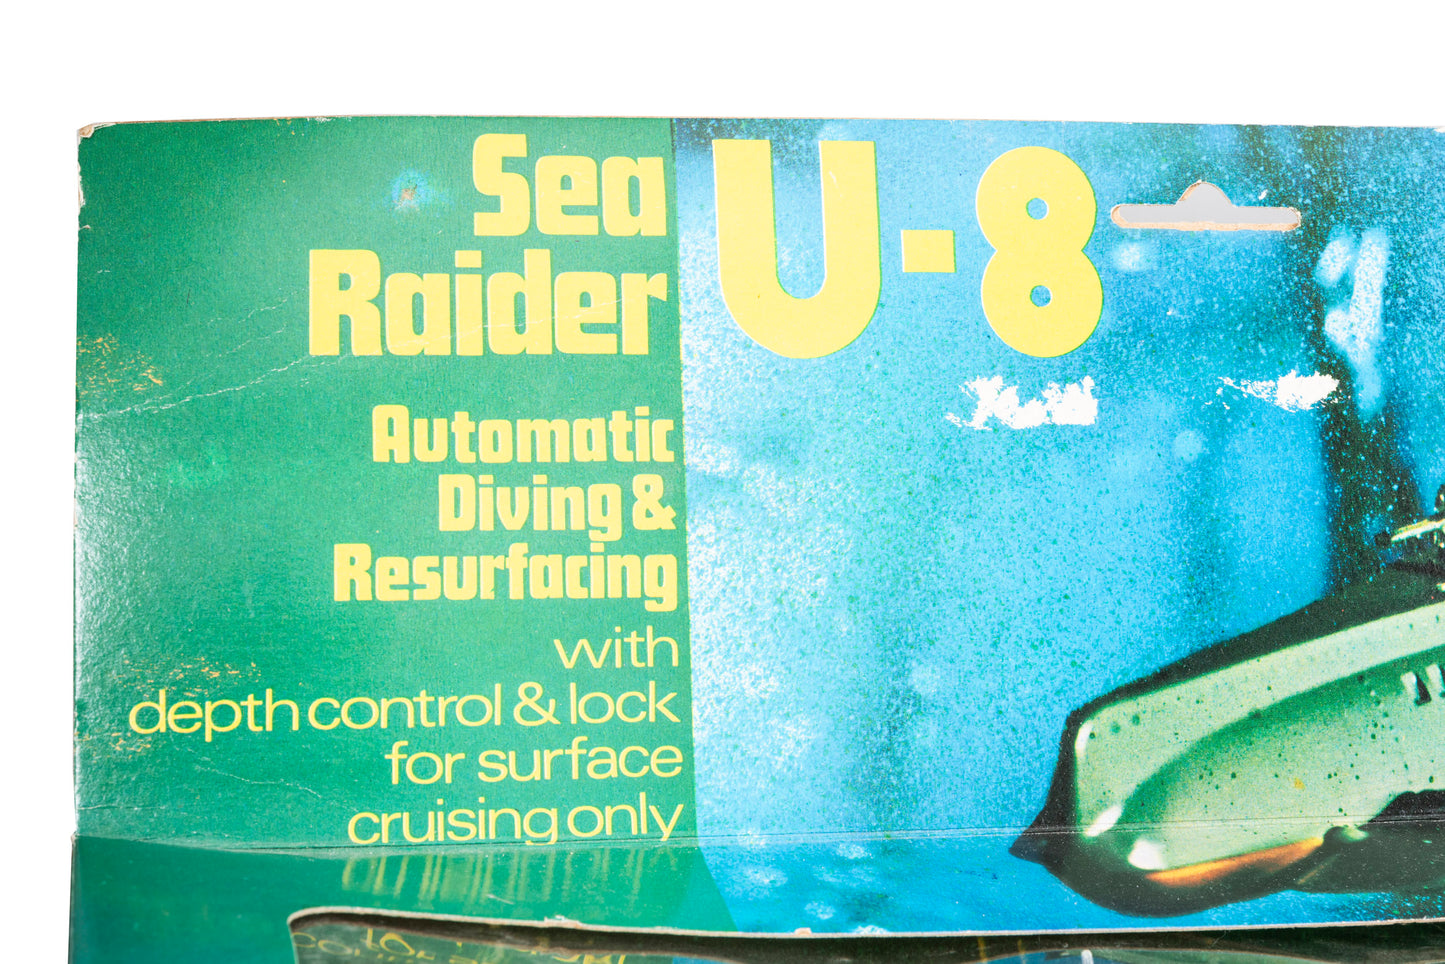 U-8 'Sea Raider' Submarine Bath Toy from Playart